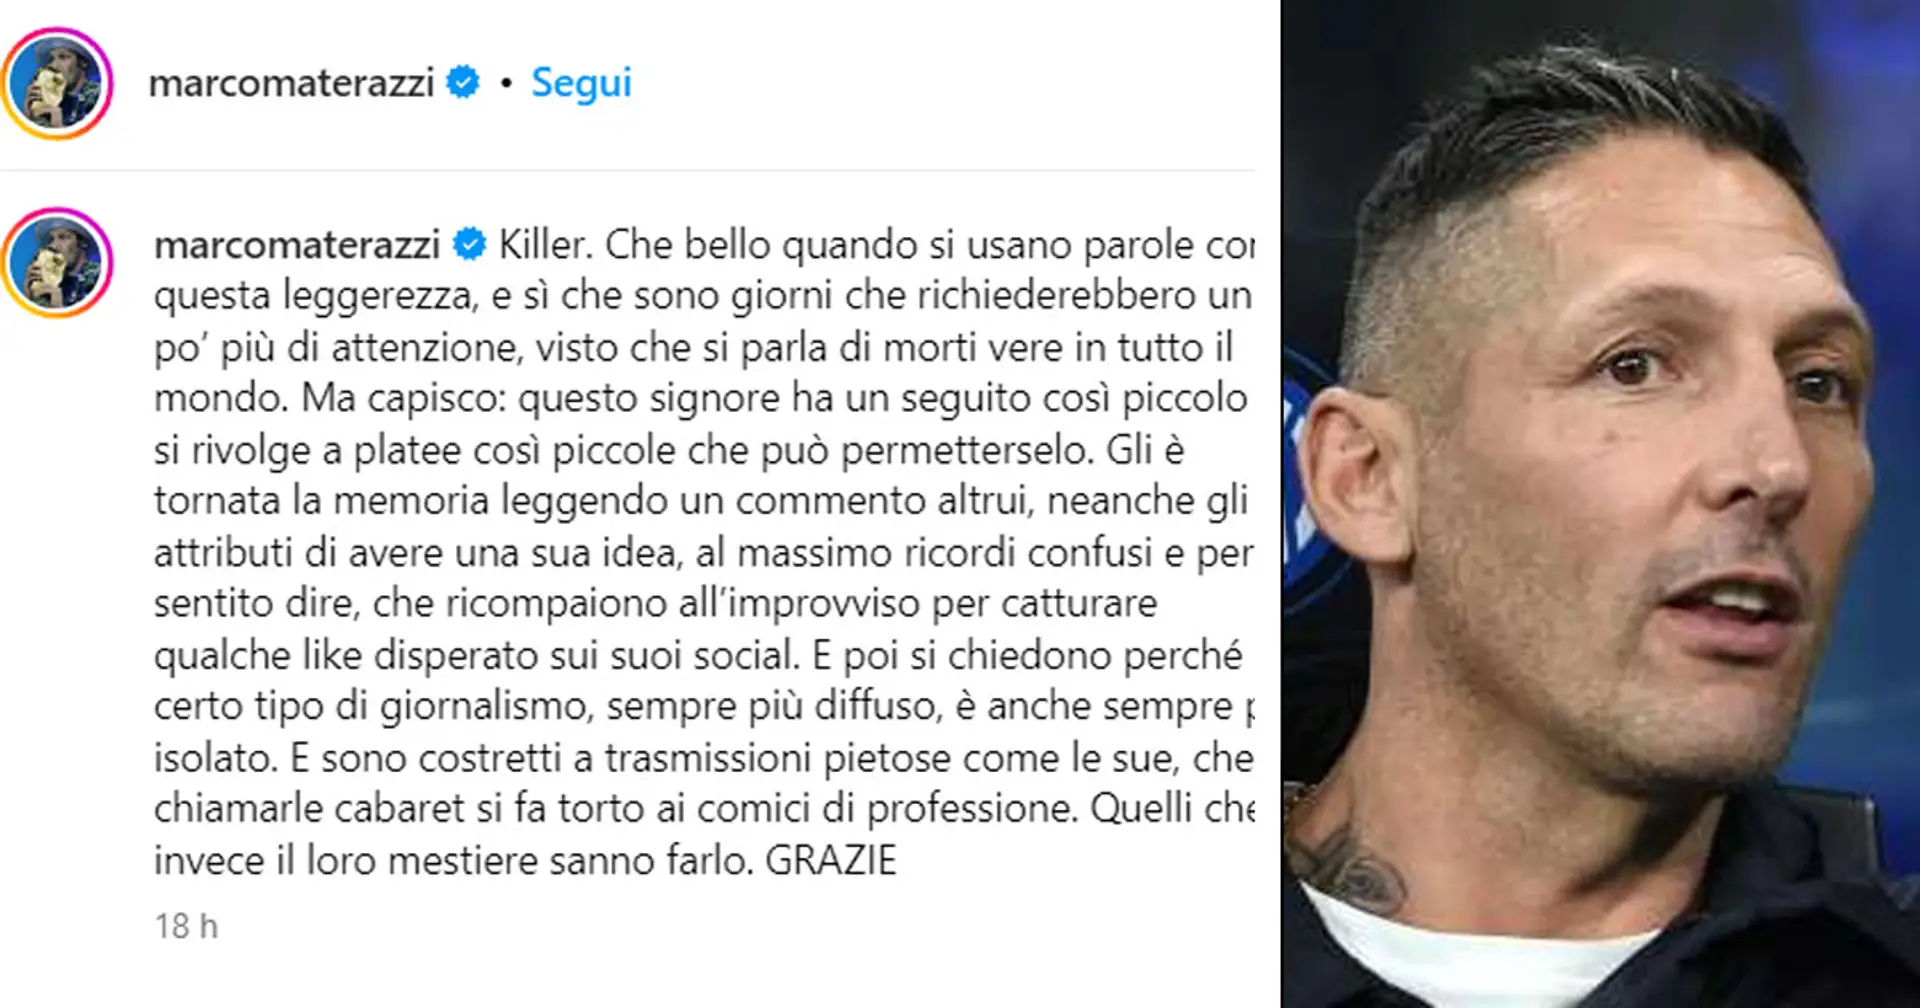 Un giornalista provoca Materazzi sui social, la risposta della leggenda dell'Inter è da signore: "Fallo da vero Killer? Parole usate con leggerezza